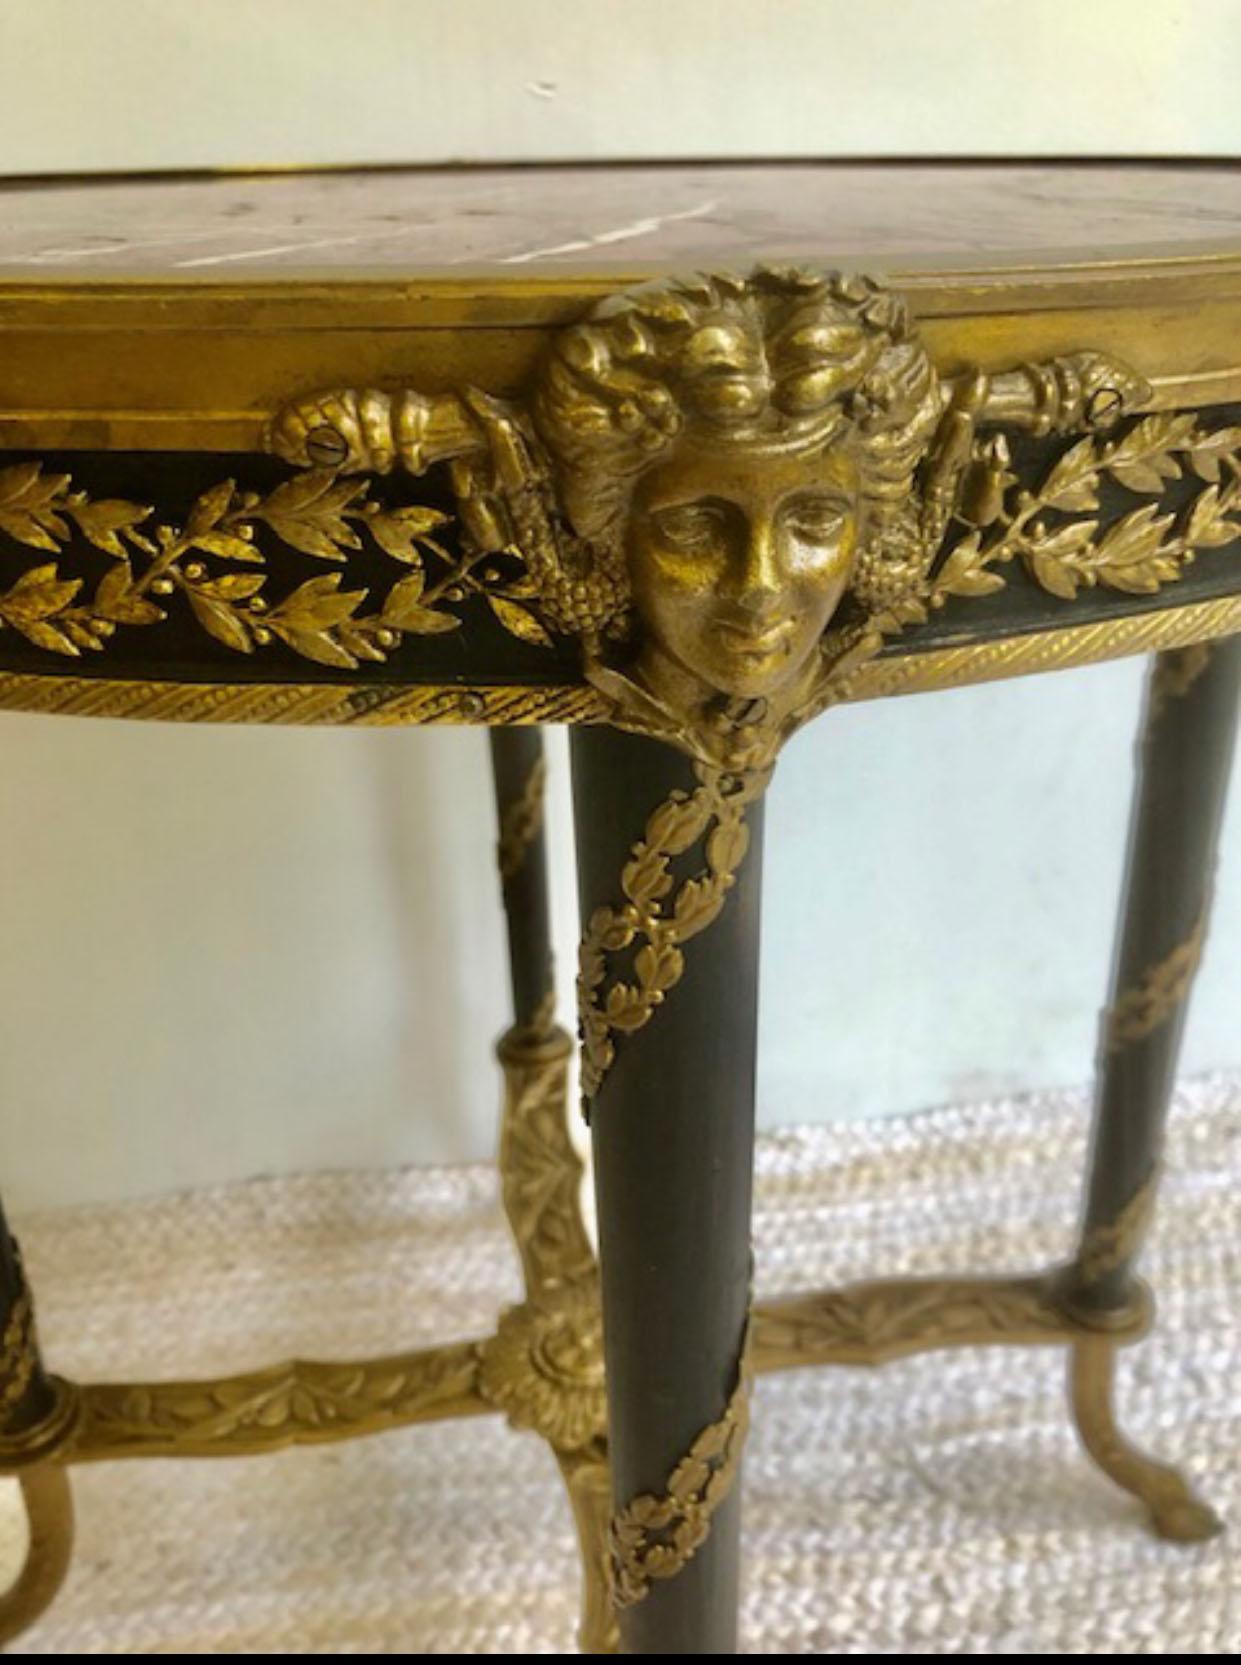 Seltene 19. C unterzeichnet Französisch Bronze Ormolu montiert Huf oder Pfote Fuß rund Bouillotte gelegentlich Ende Beistelltisch.
Wunderschöner Tisch mit bronzenem Gestell, Beine mit klassischer Bronzeplatte, mit Marmoreinlage. Holzbeine mit